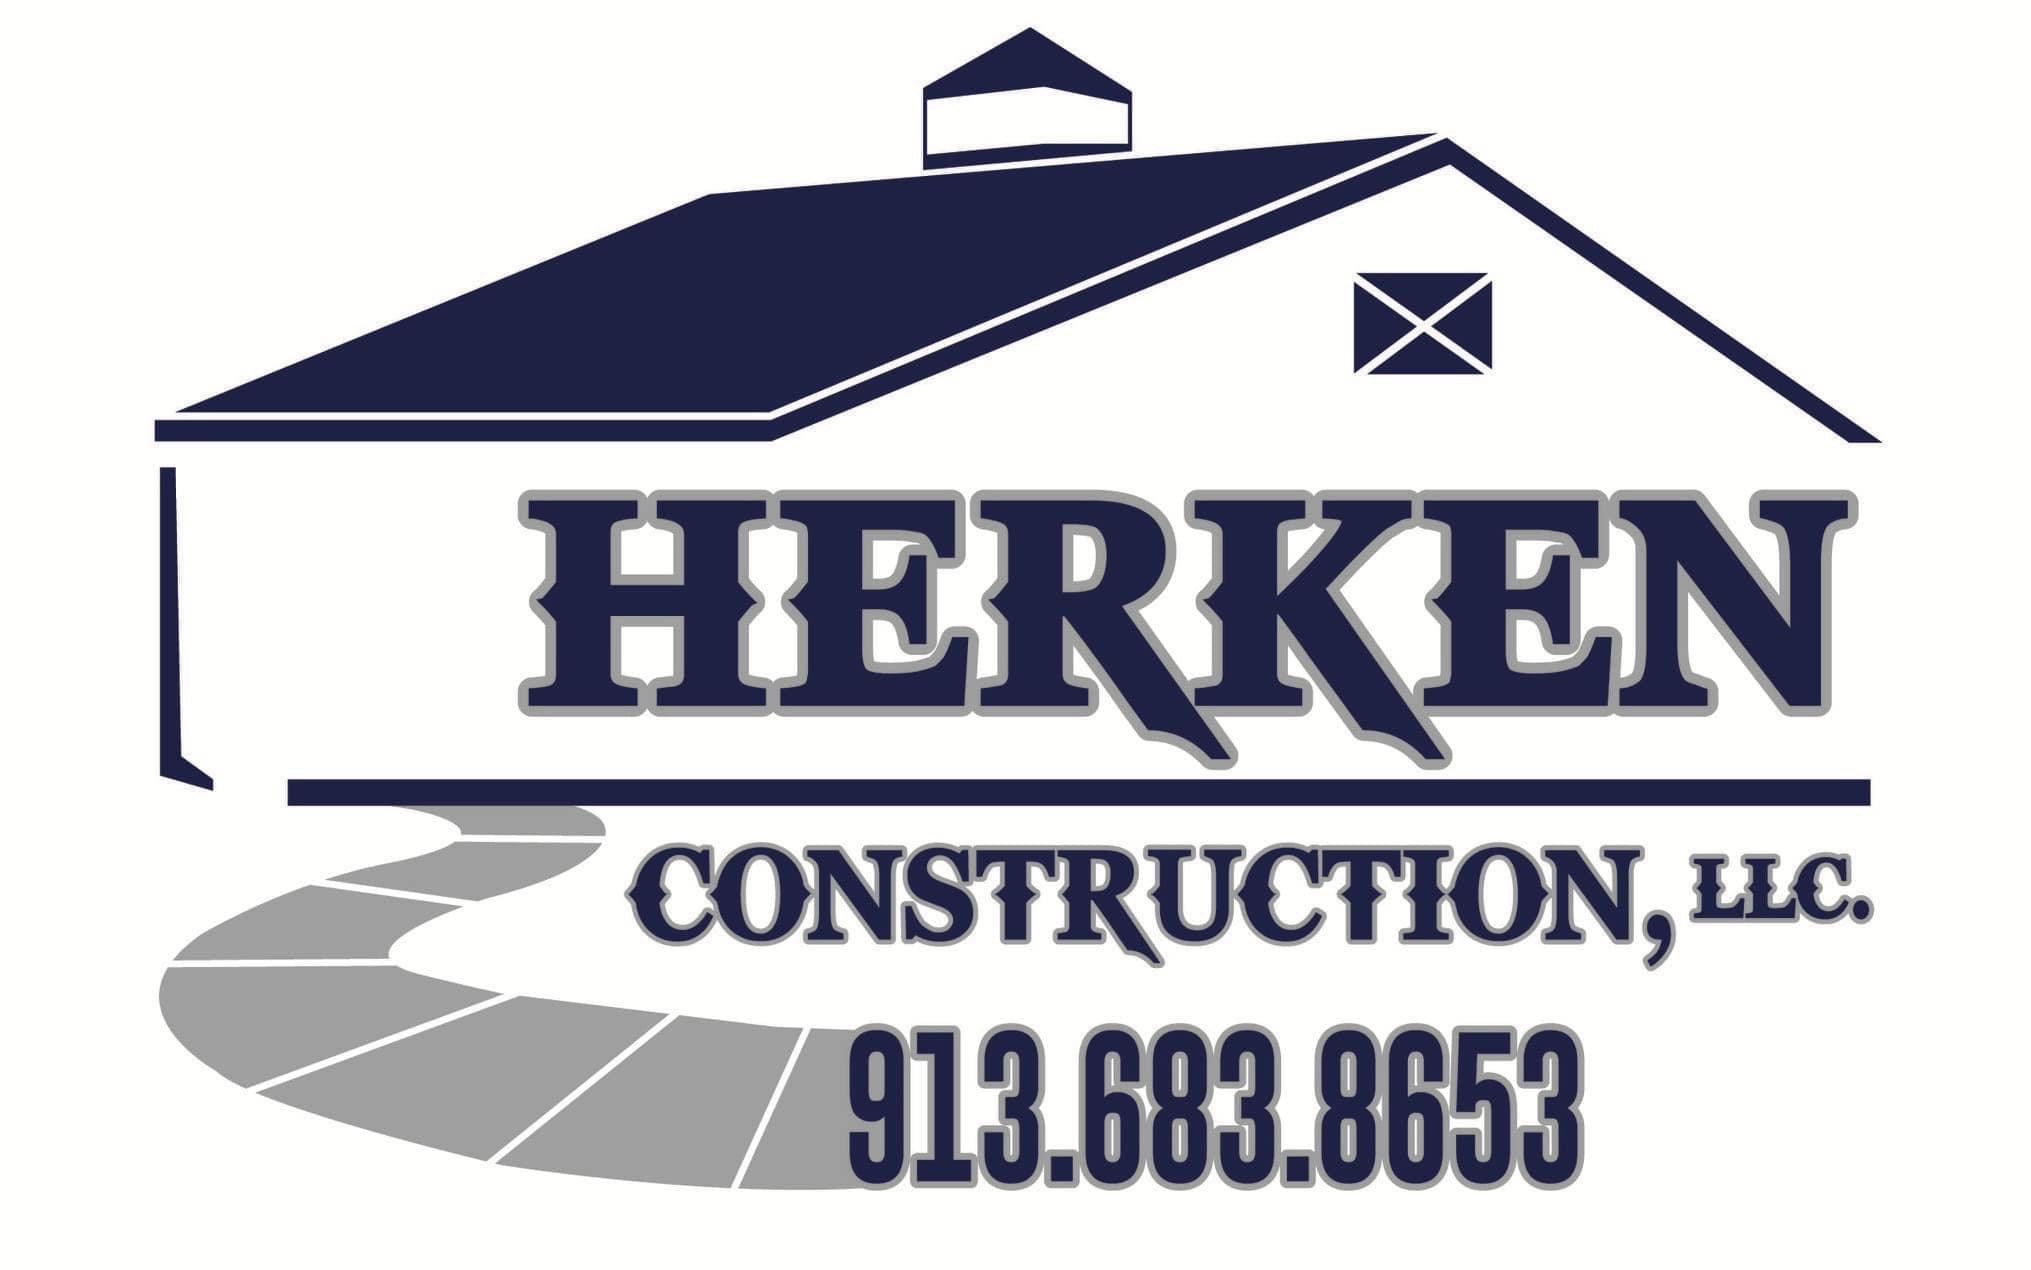 Herken Construction